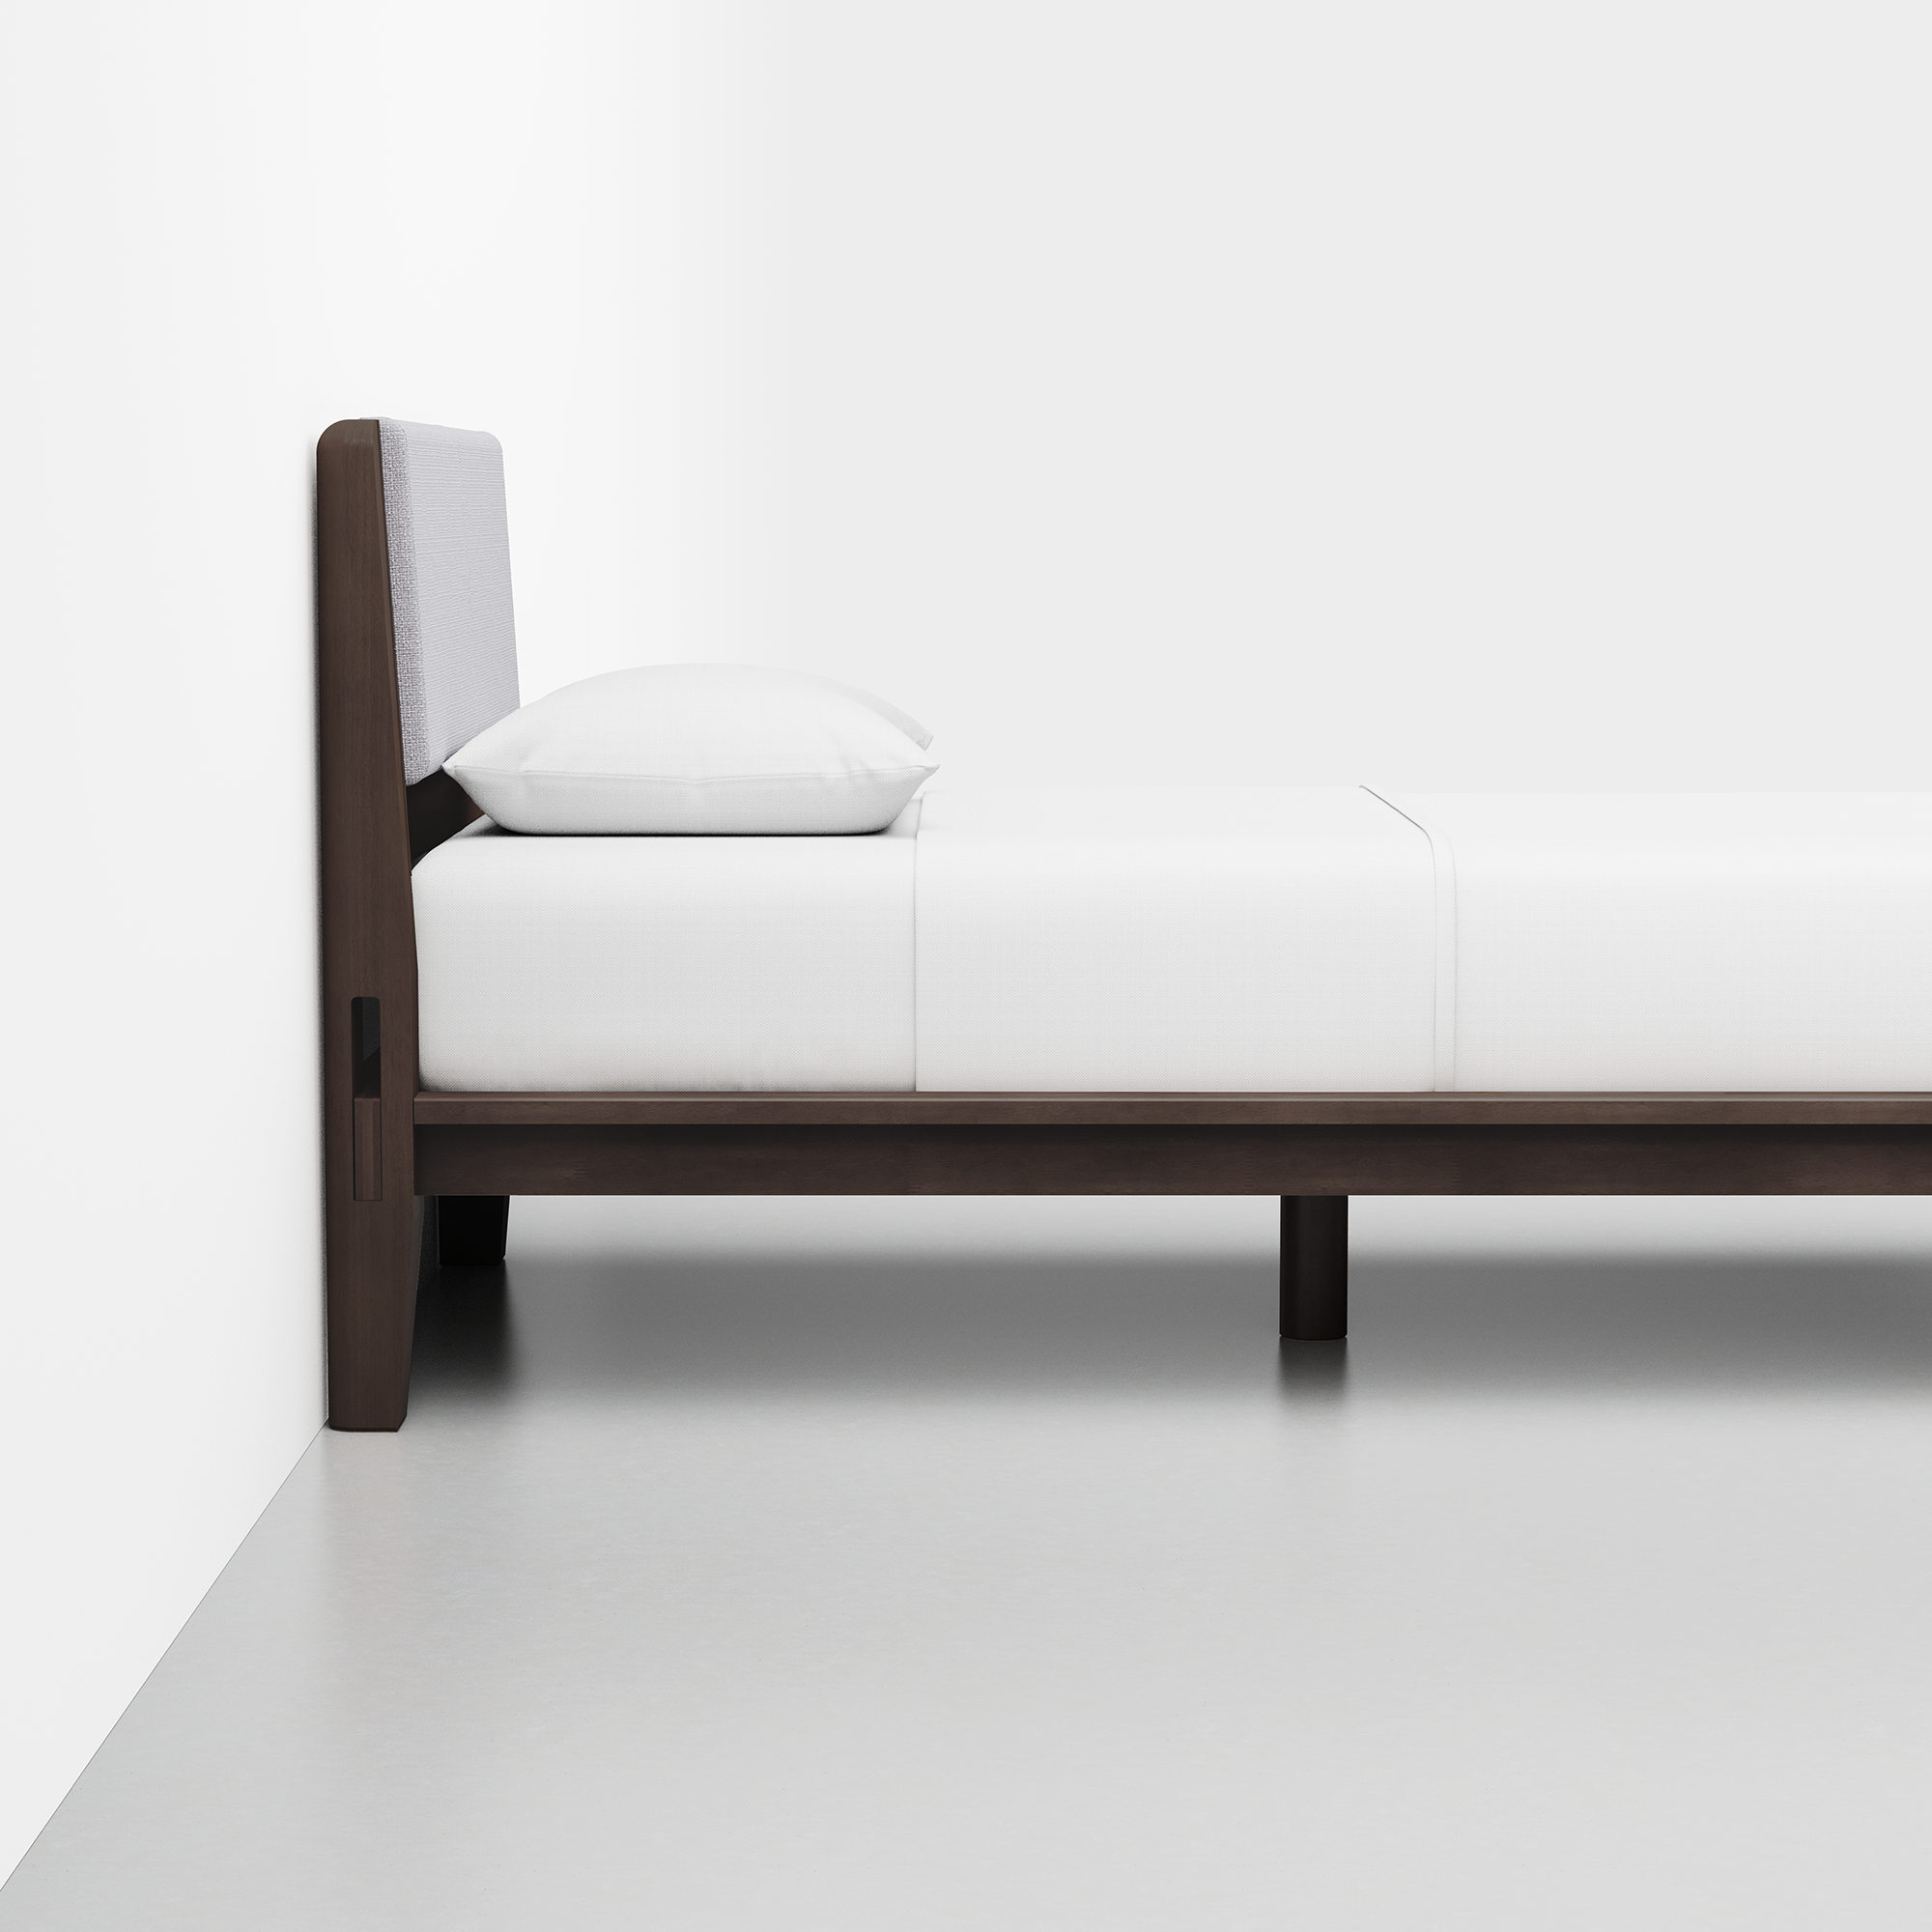 The Bed (Espresso / HB Cushion Fog Grey) - Render - Side